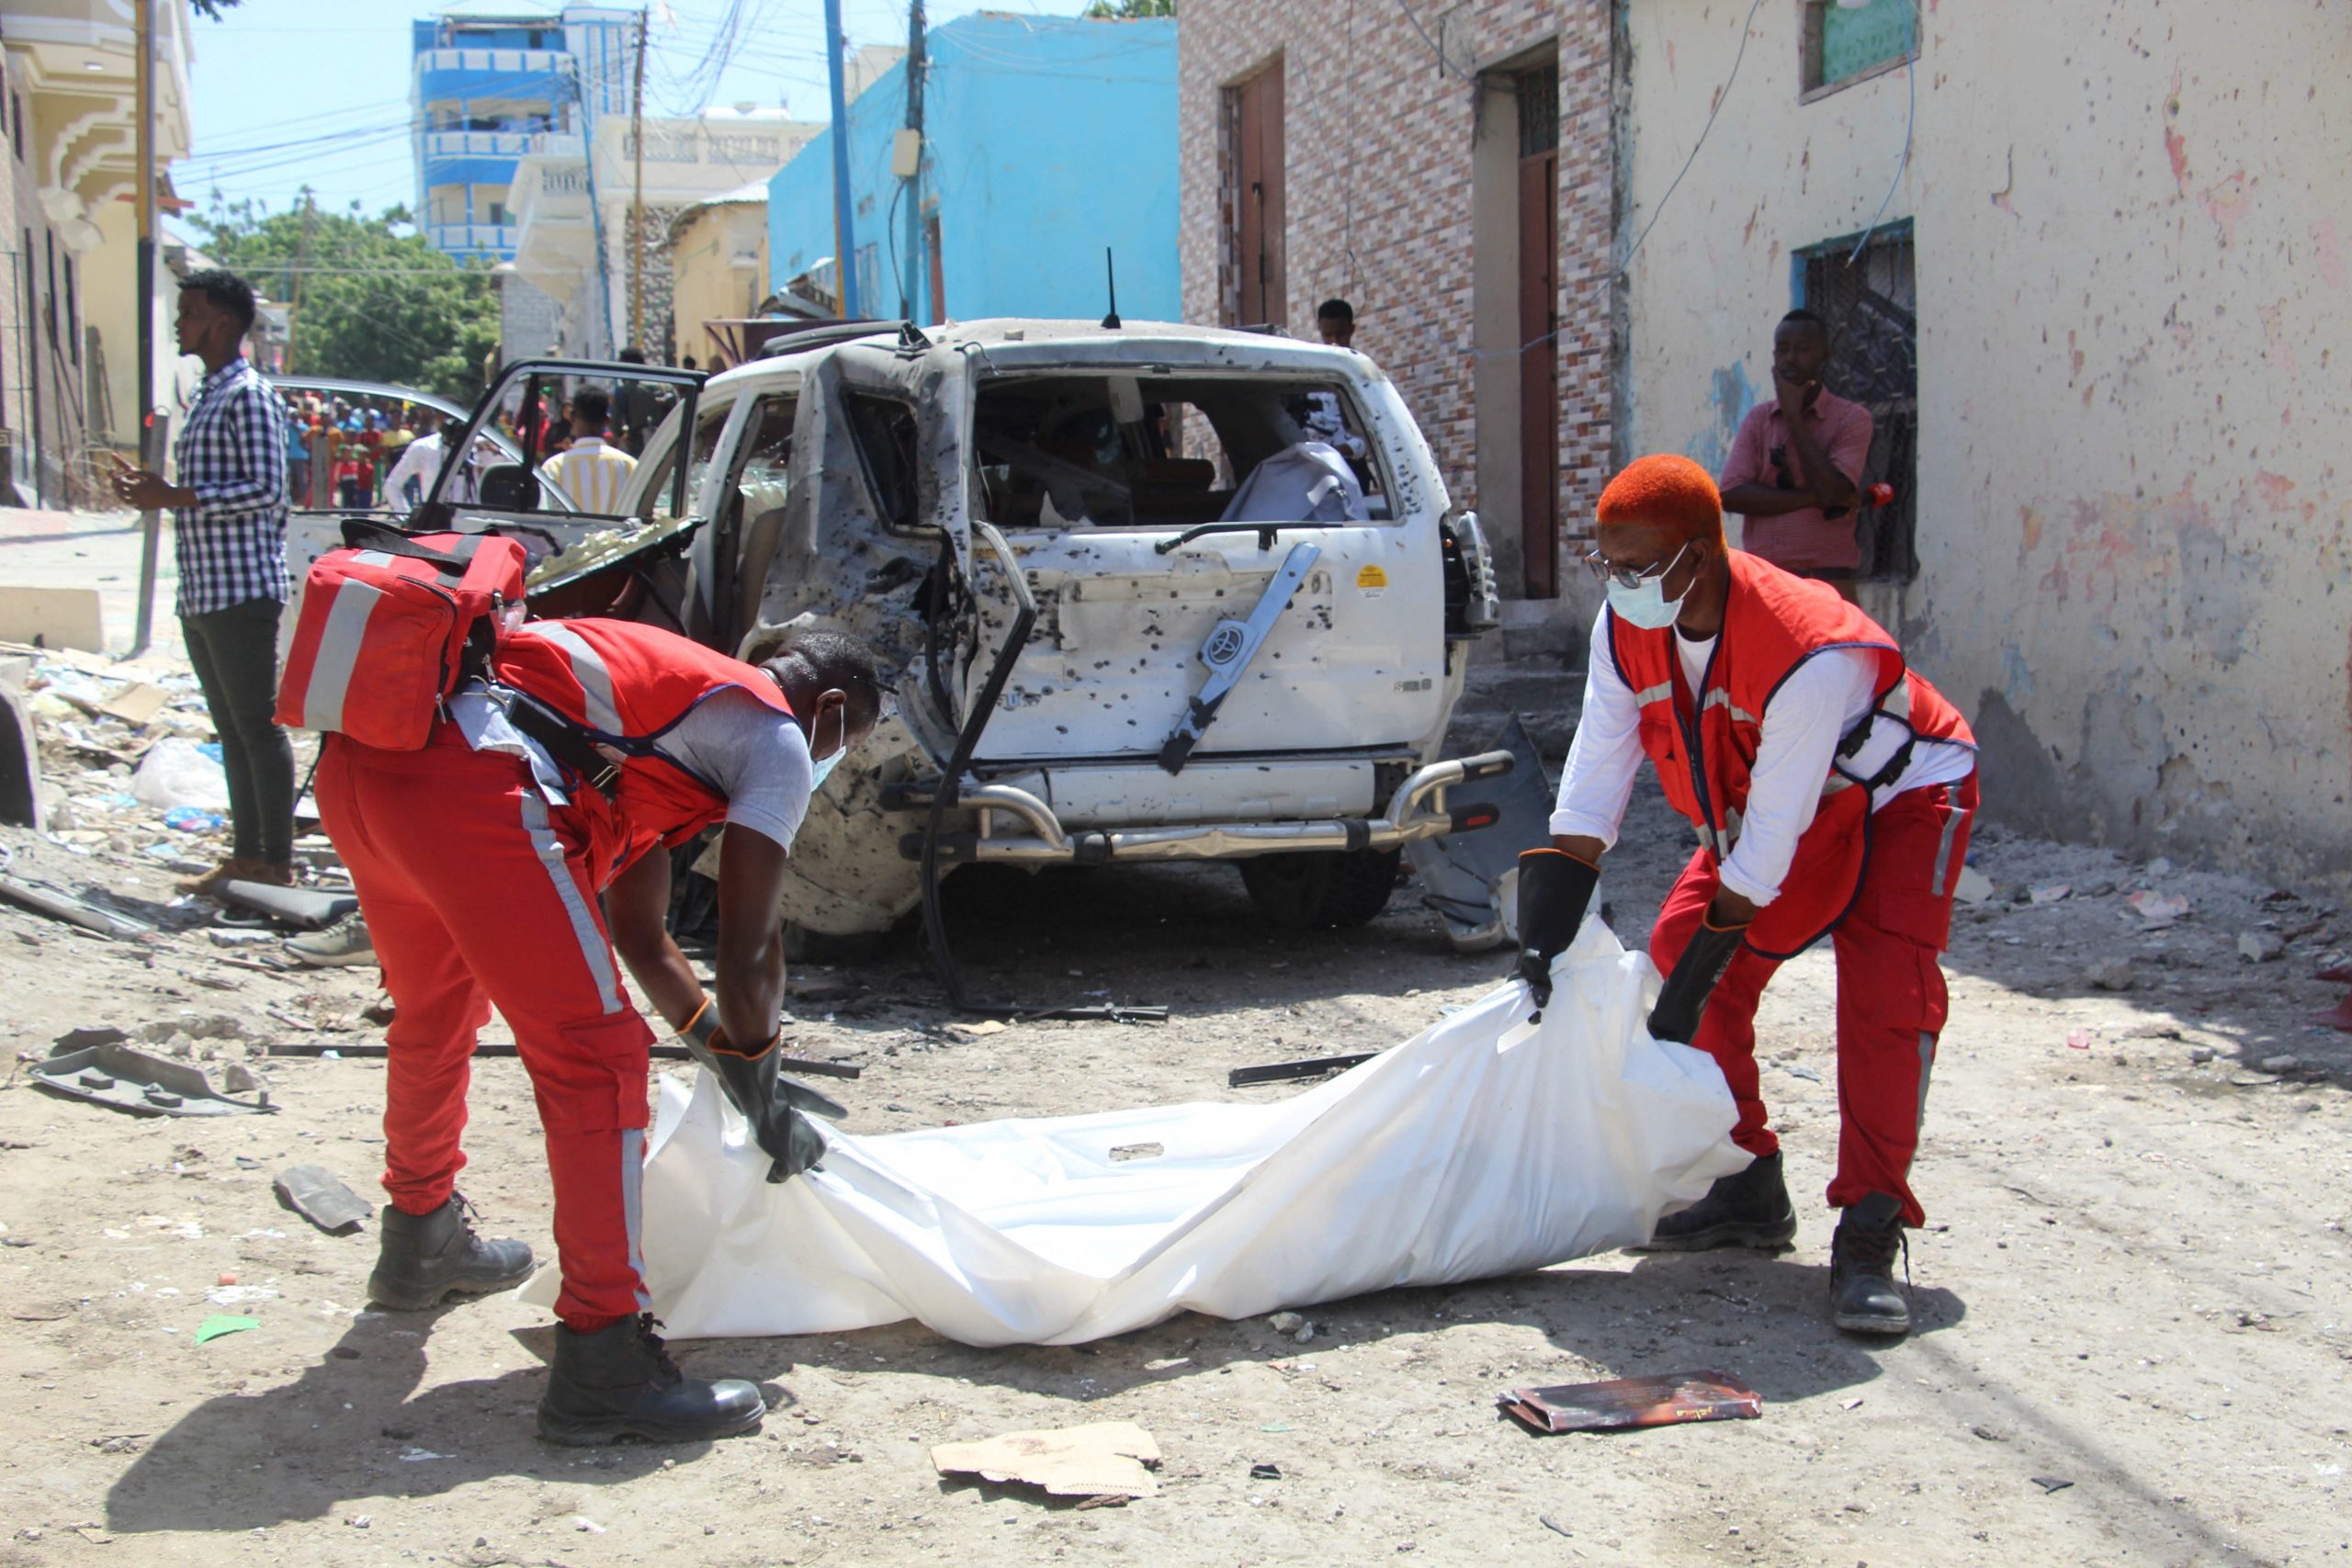 遭人肉炸弹袭击 索马里政府发言人受伤